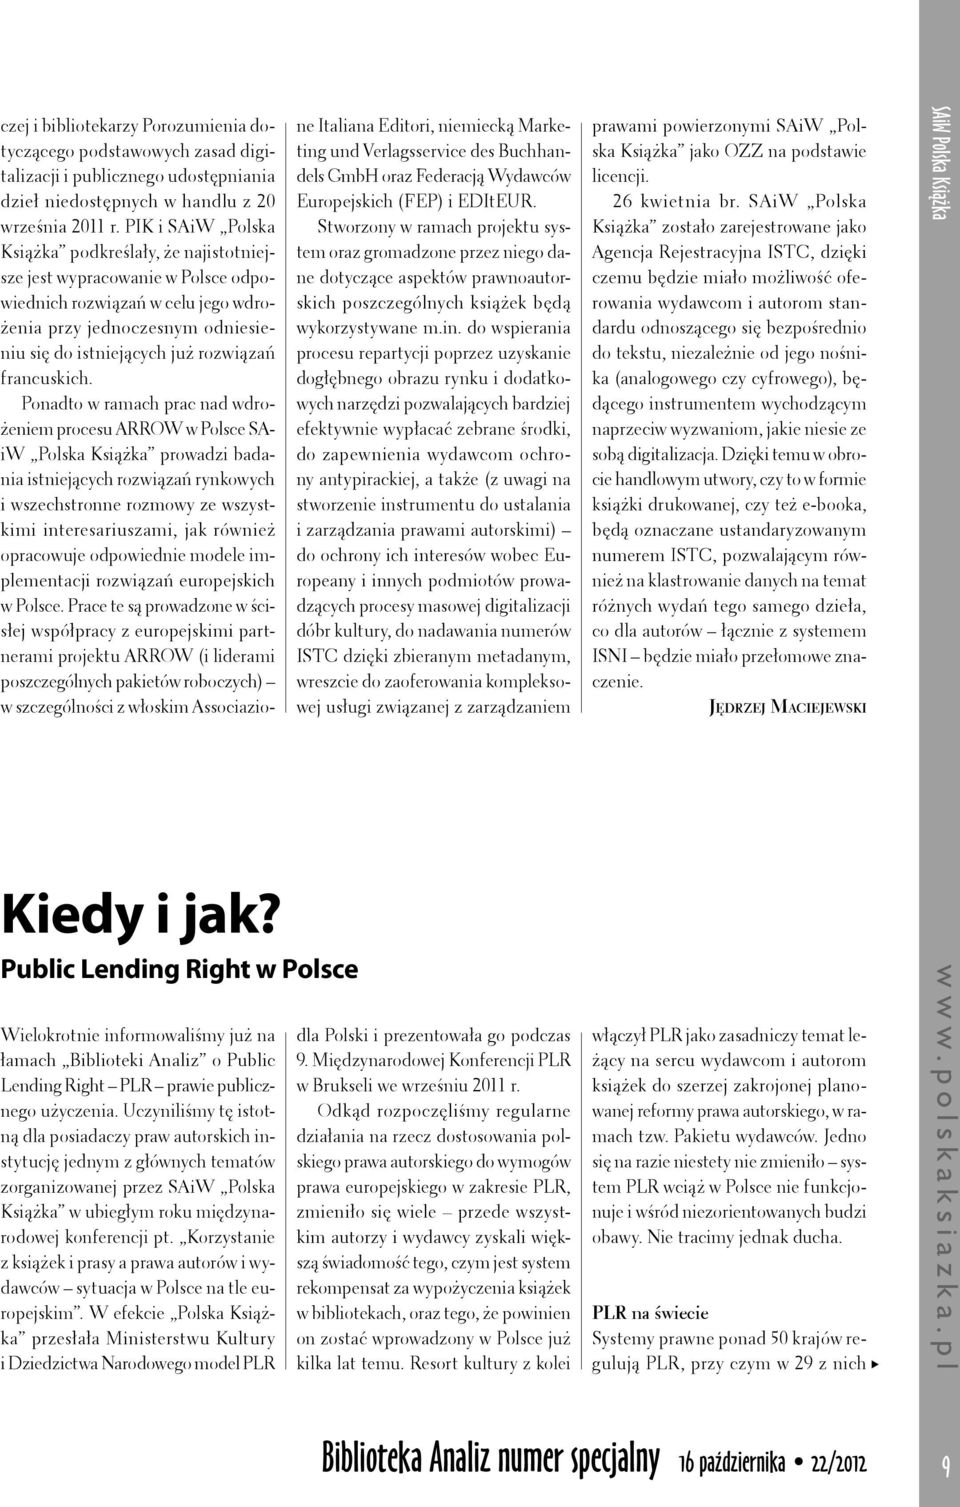 Korzystanie z książek i prasy a prawa autorów i wydawców sytuacja w Polsce na tle europejskim.